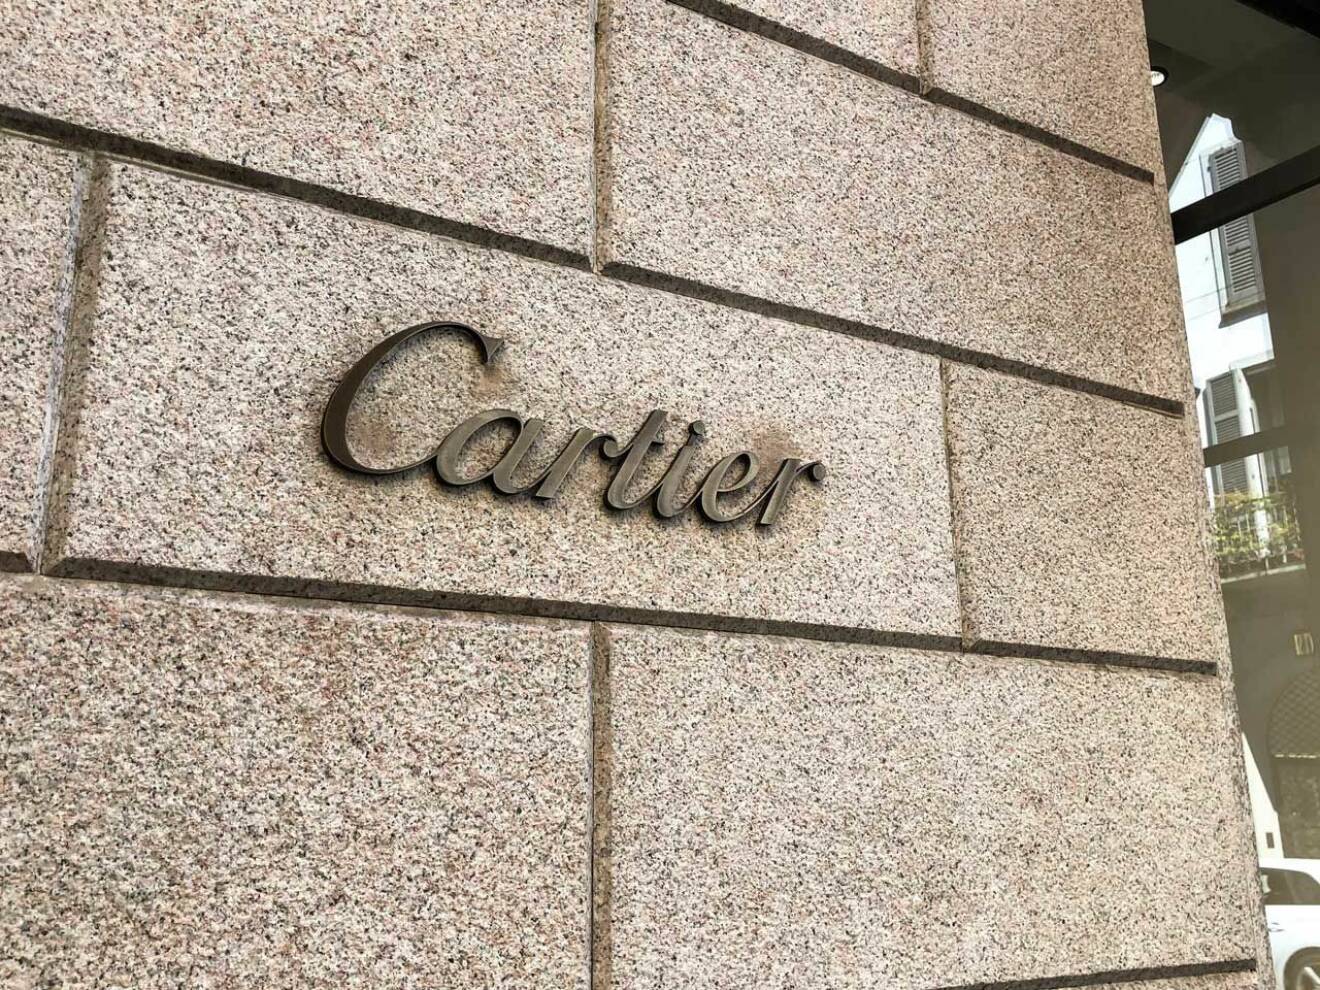 Klockan kommer från Cartier.